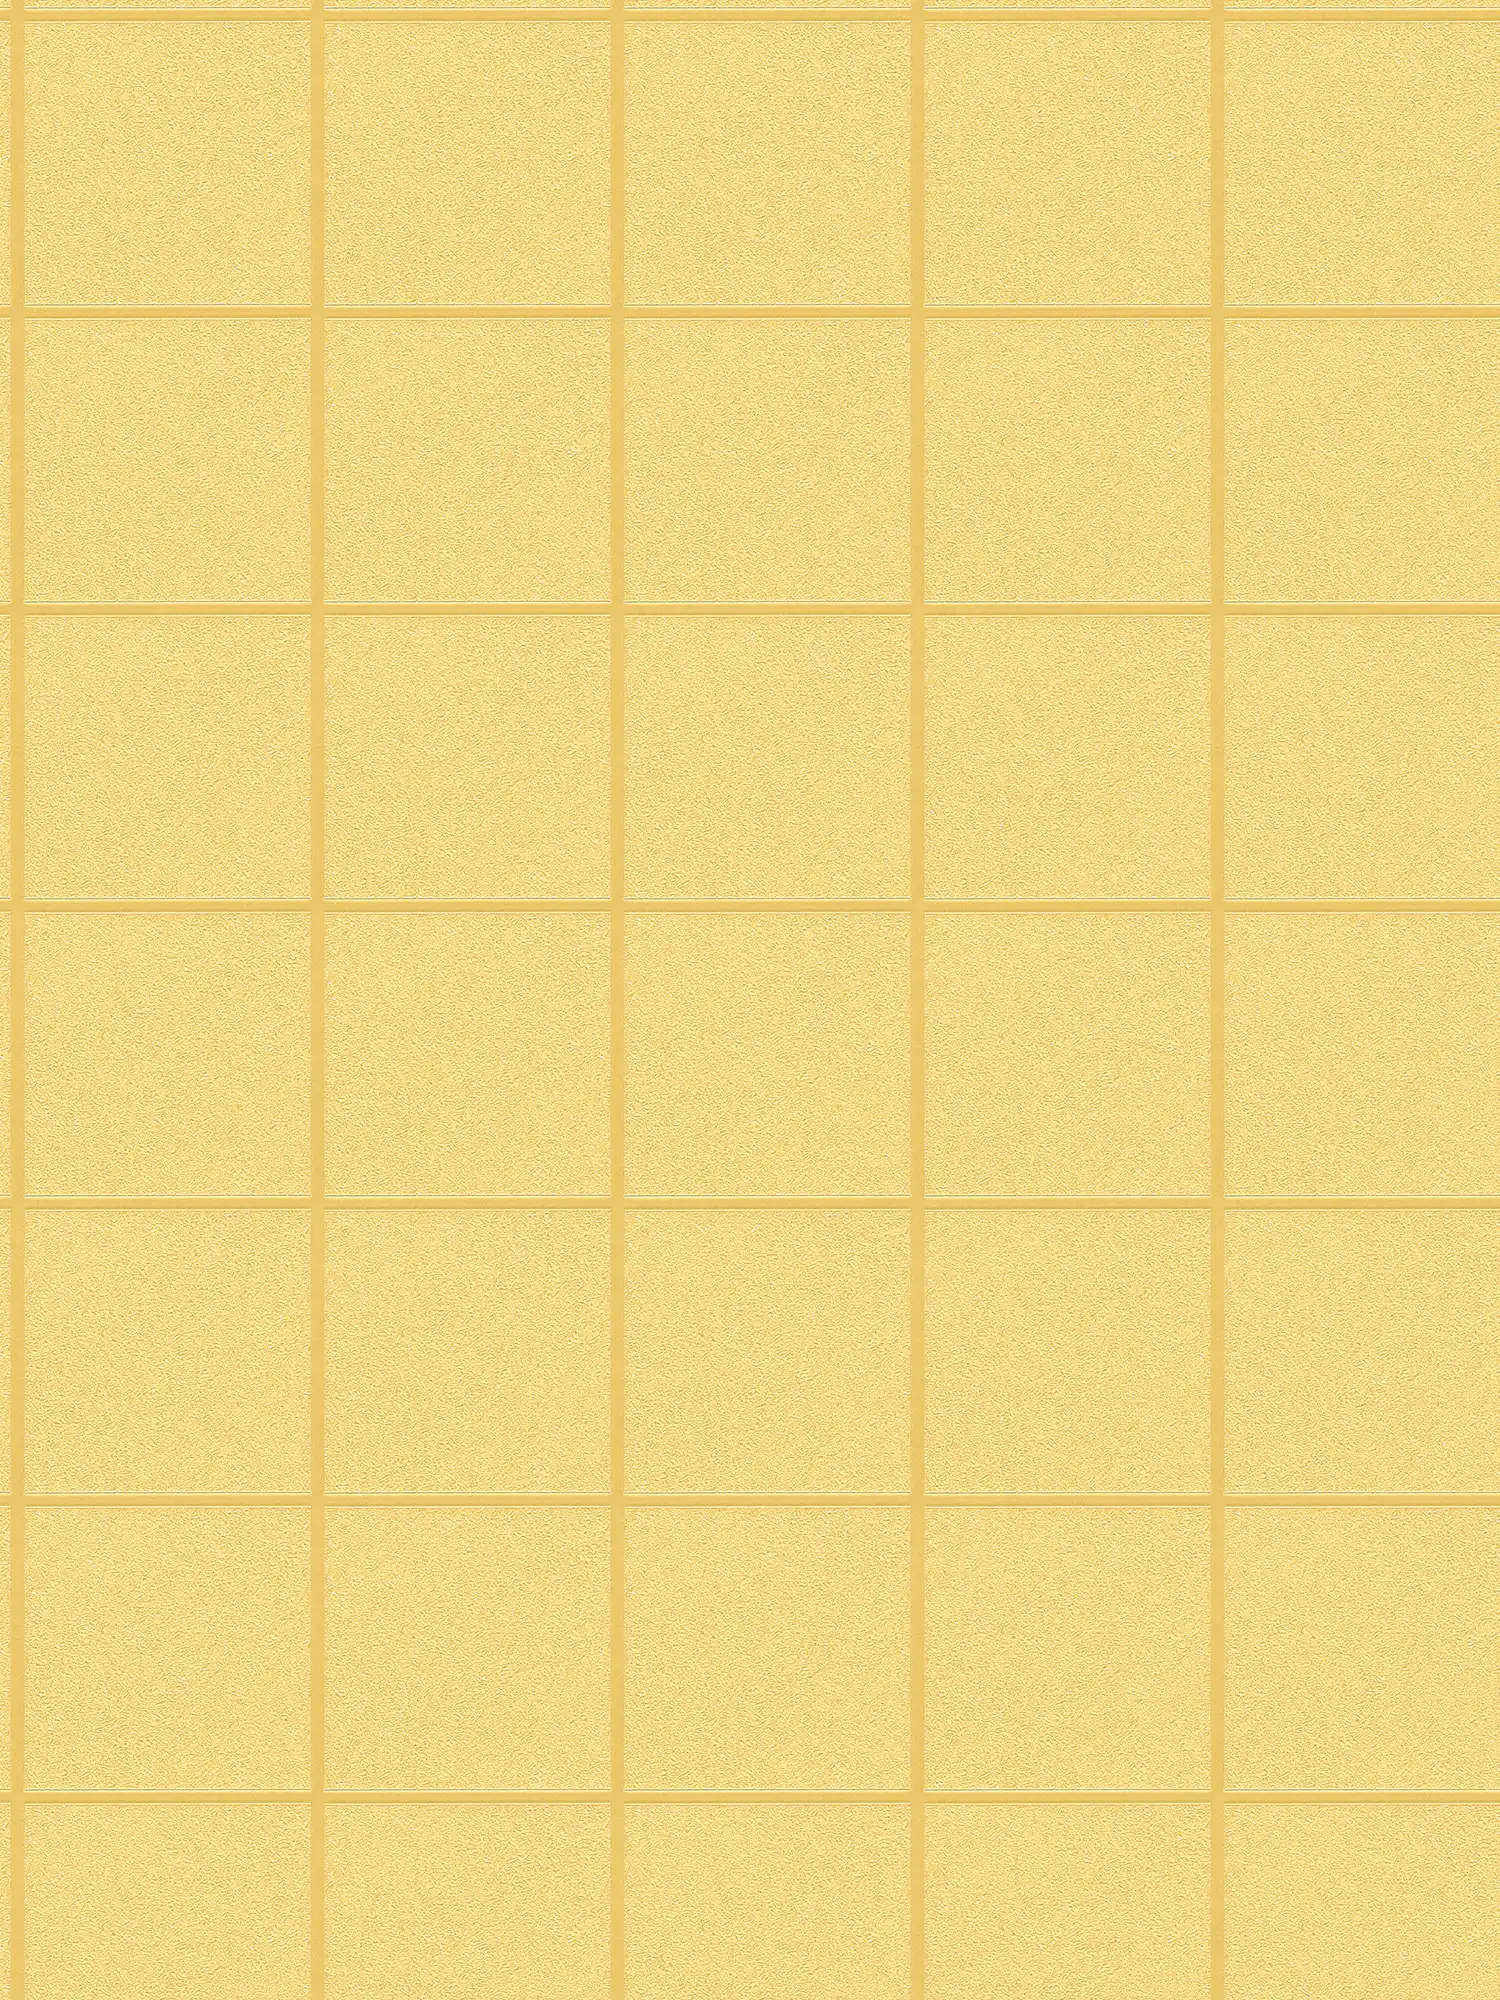 Papier peint motif carreaux, joints sombres & effet 3D - or, jaune
